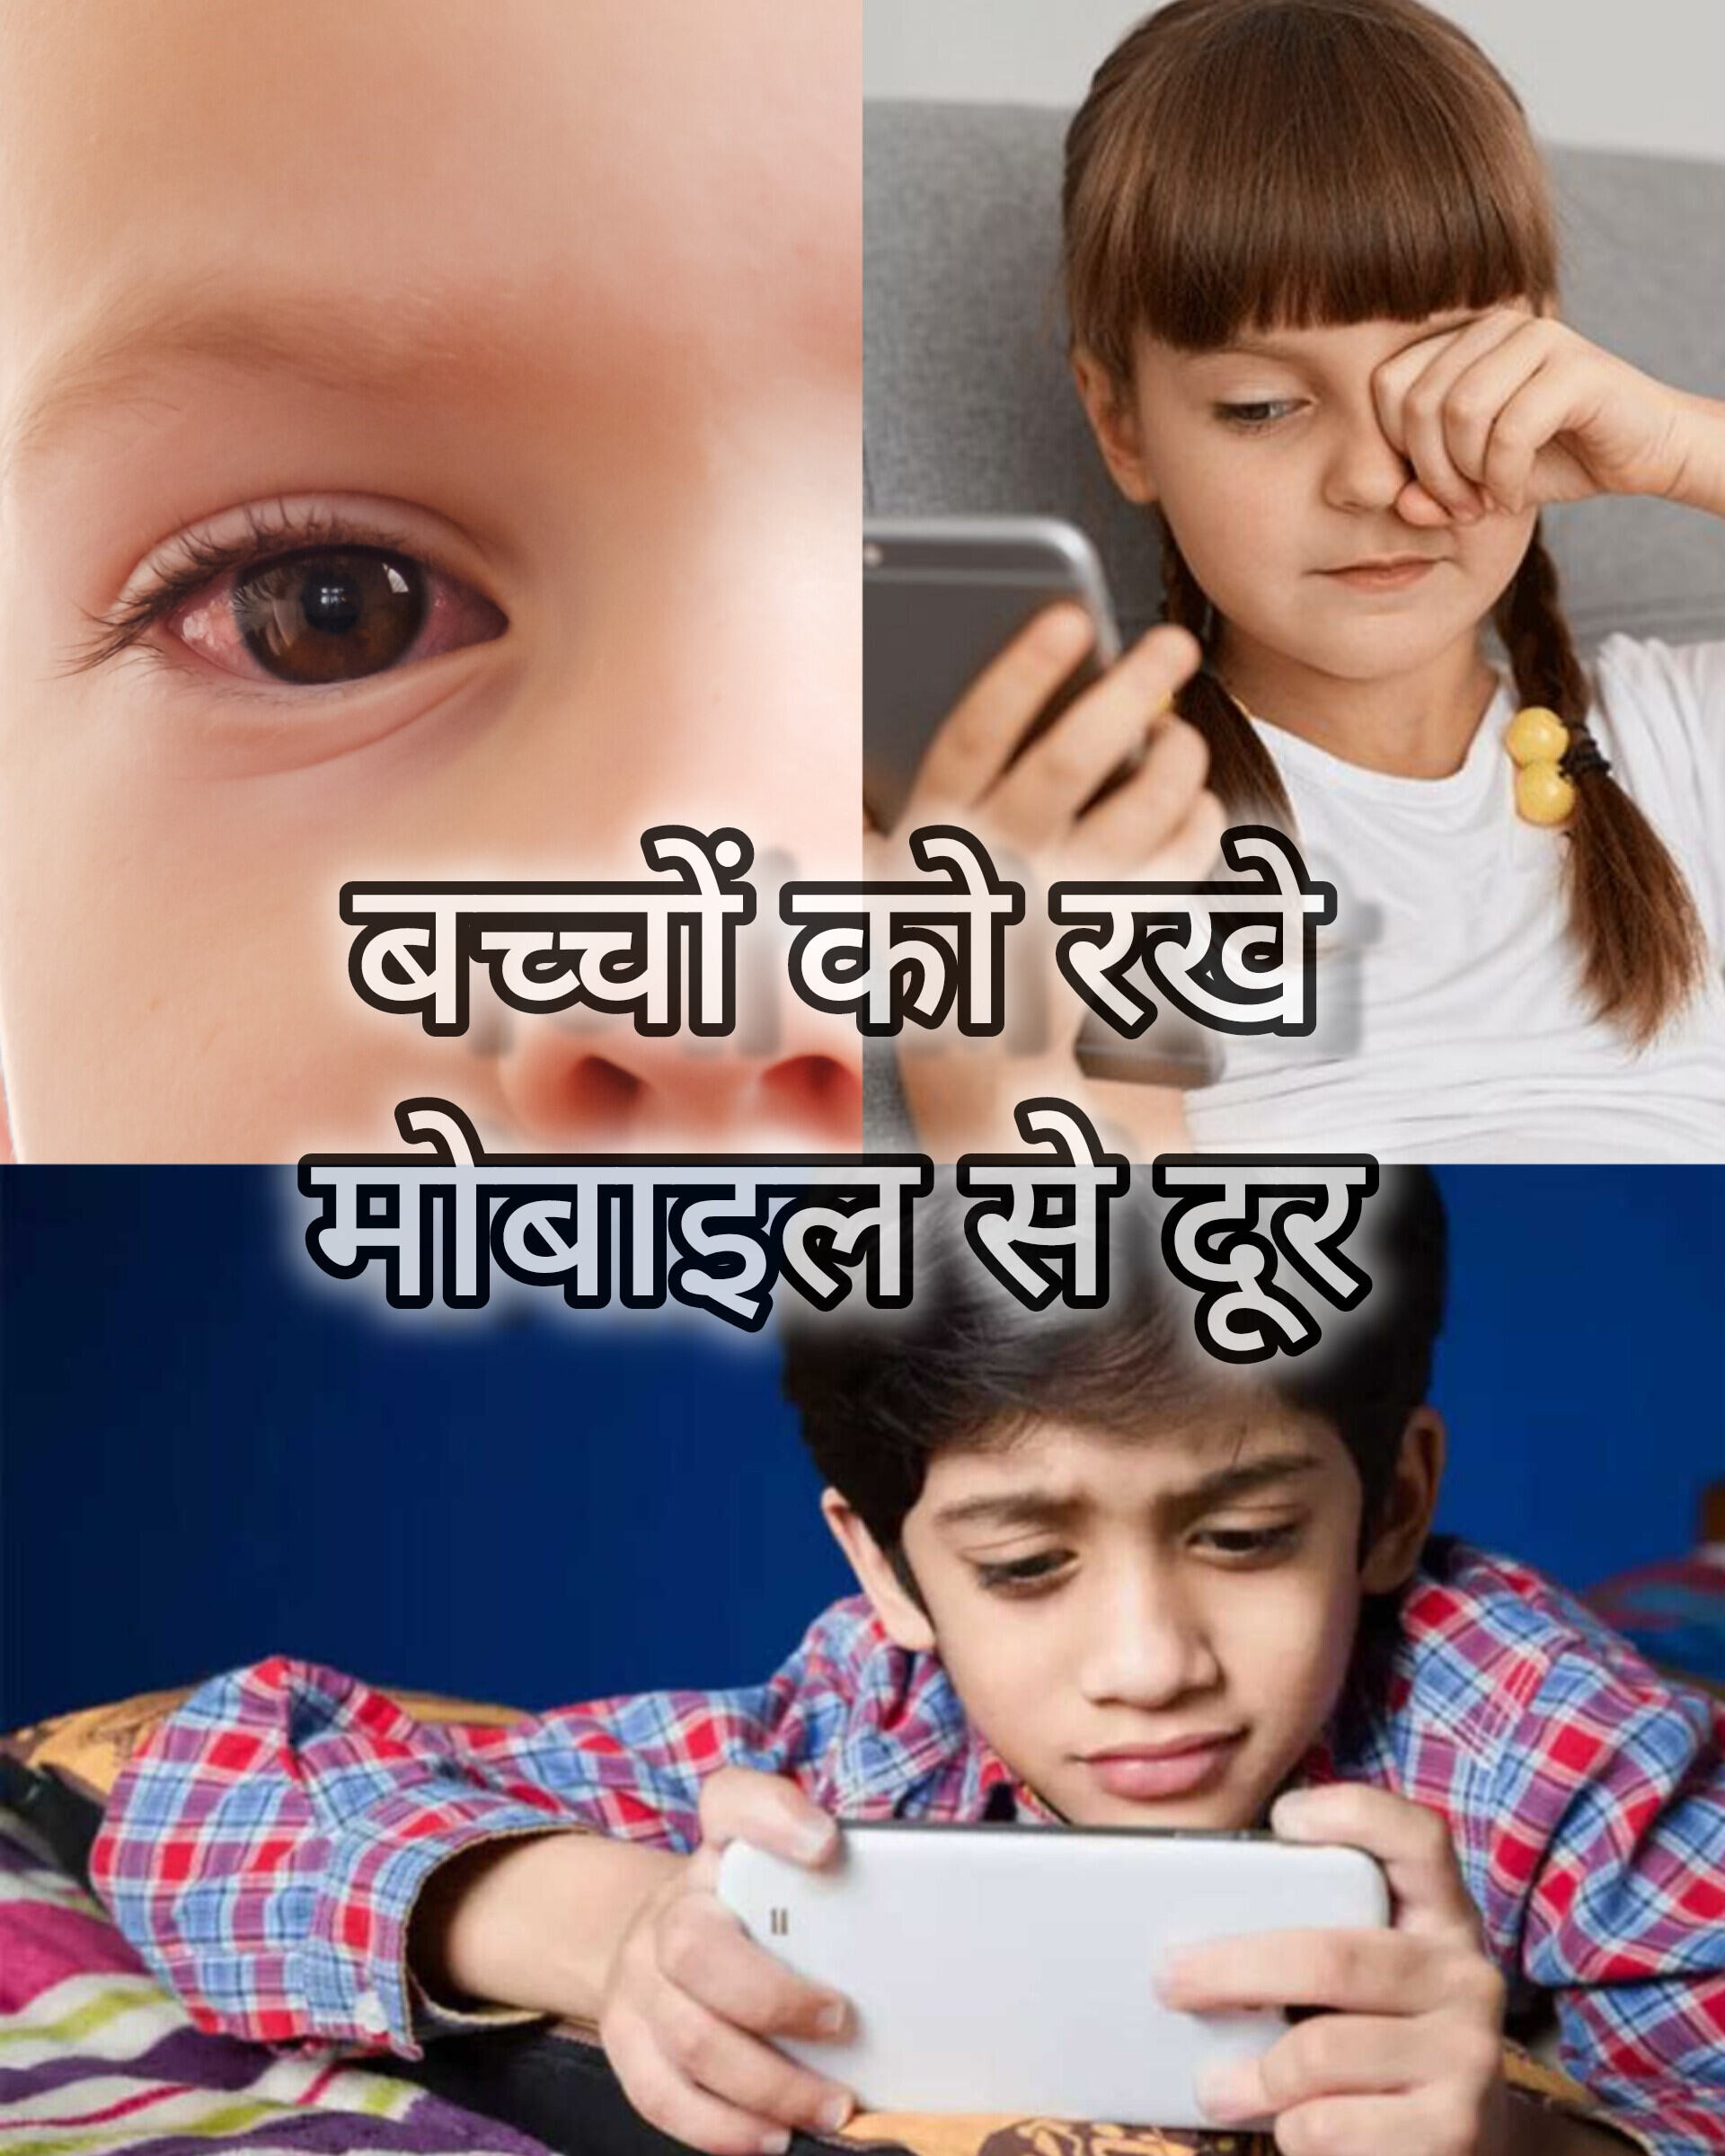 बच्चों को मोबाइल से दूर रखने के उपाय: दिमाग और आंखों पर होने वाले बुरे असर से बचाव